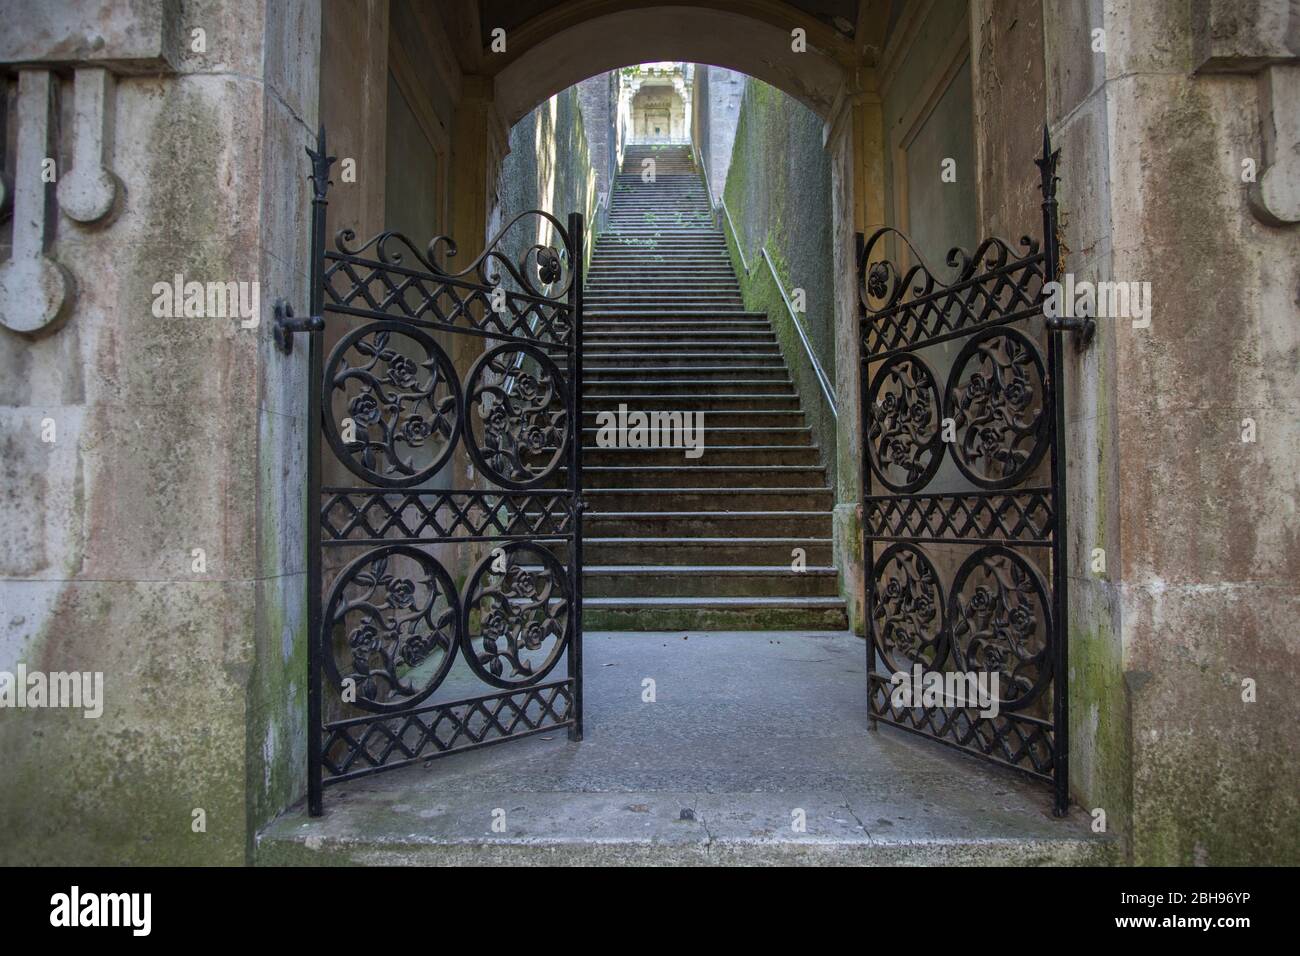 open gate in front of stairs, cemetery Cimitero di Staglieno, Genoa, Italy Stock Photo